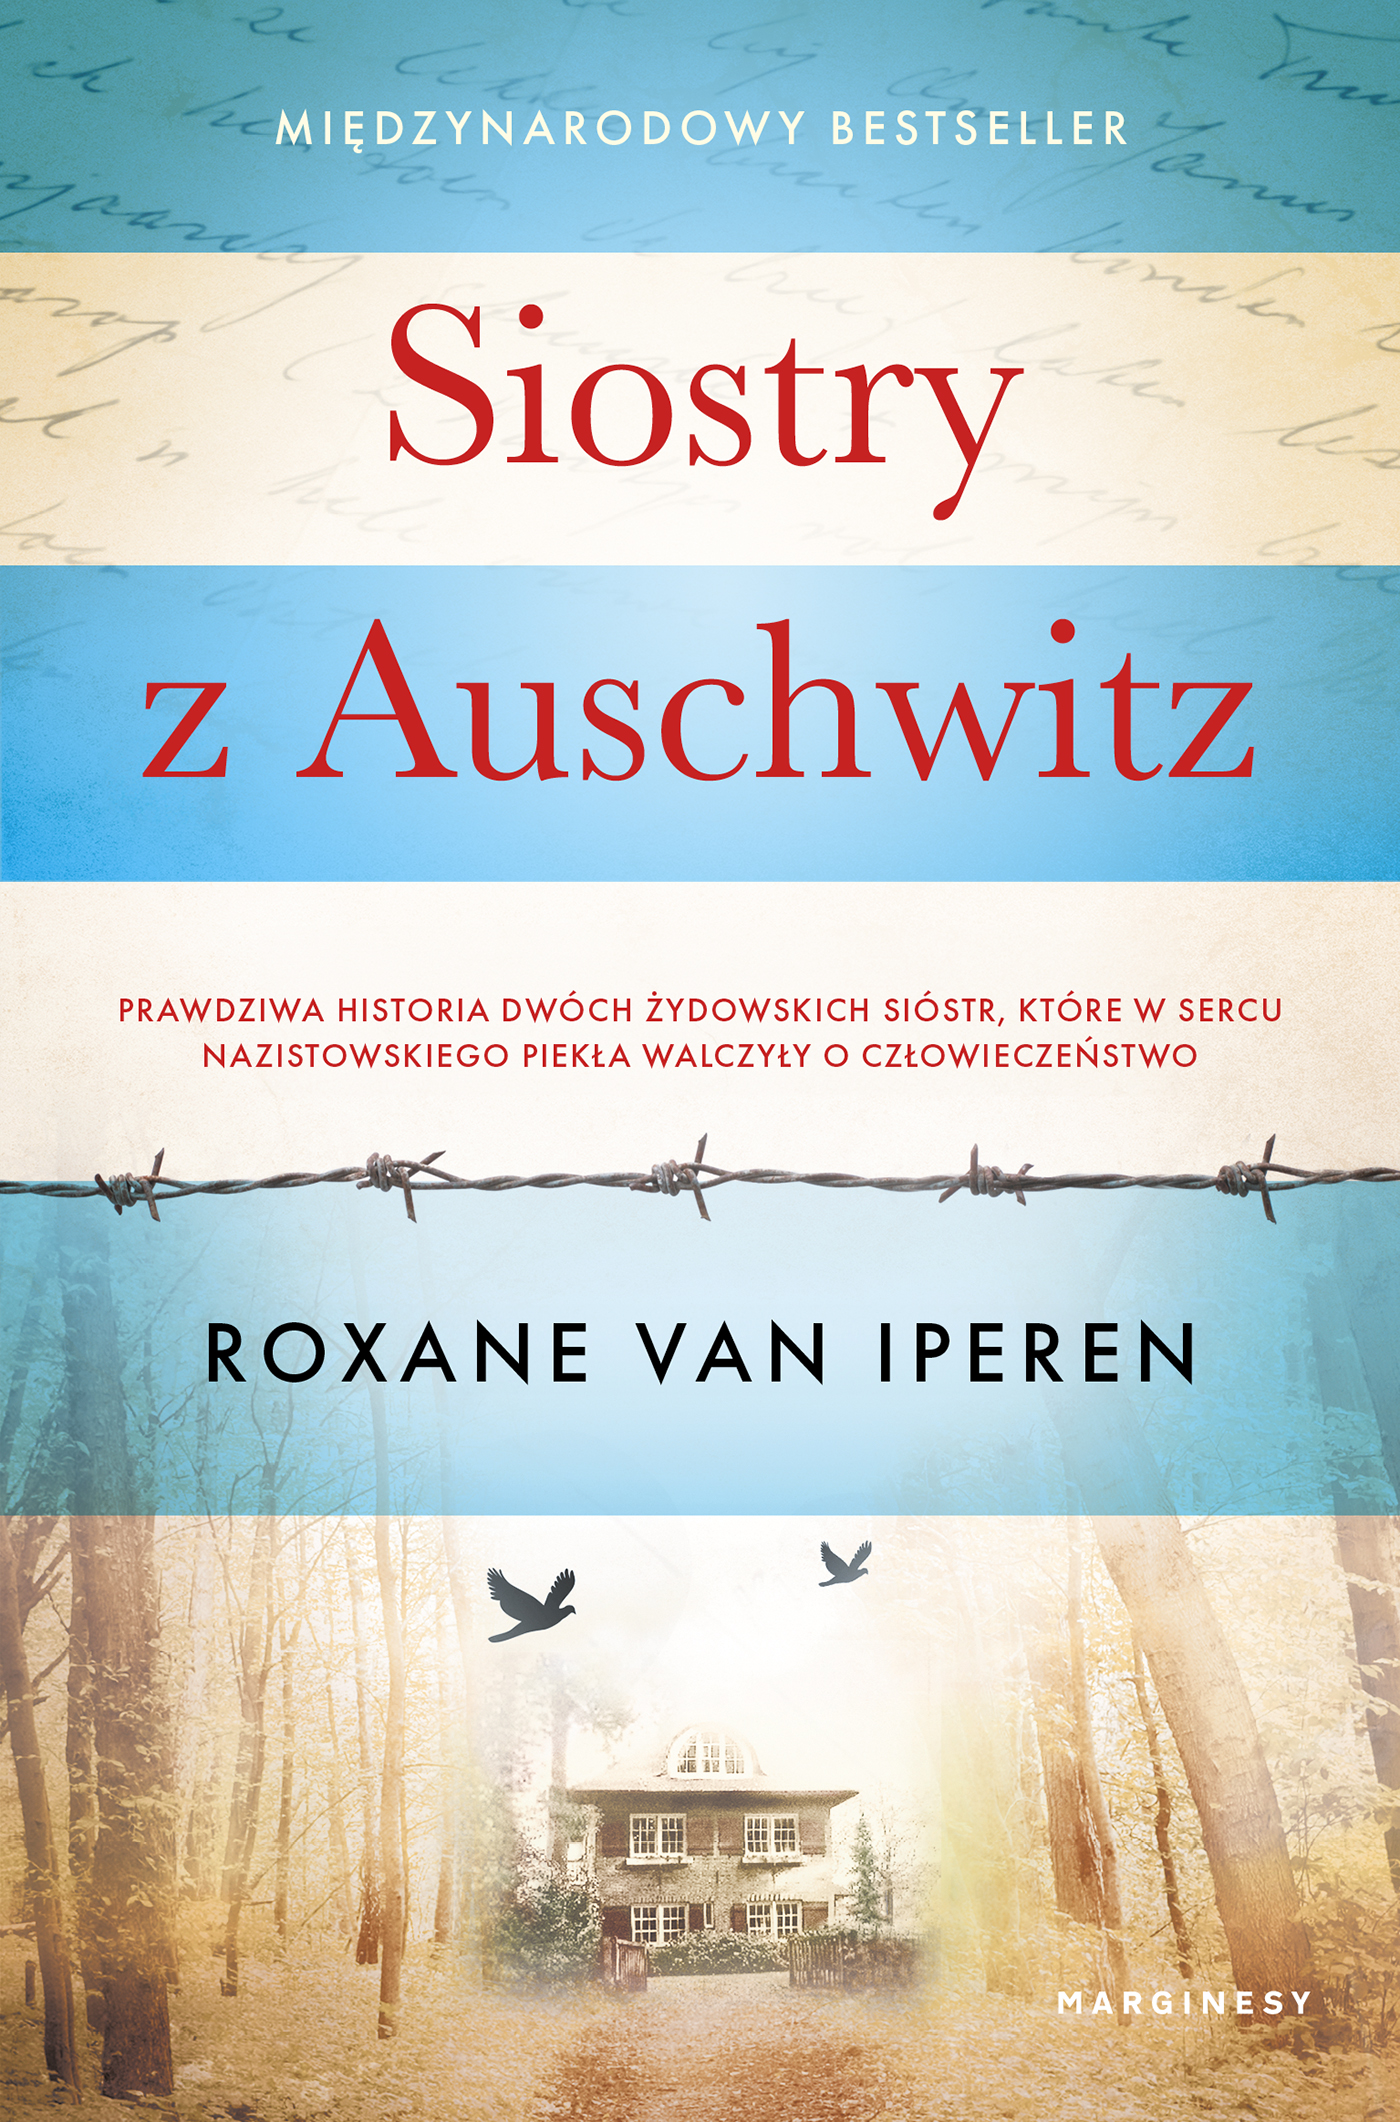 Siostry z Auschwitz